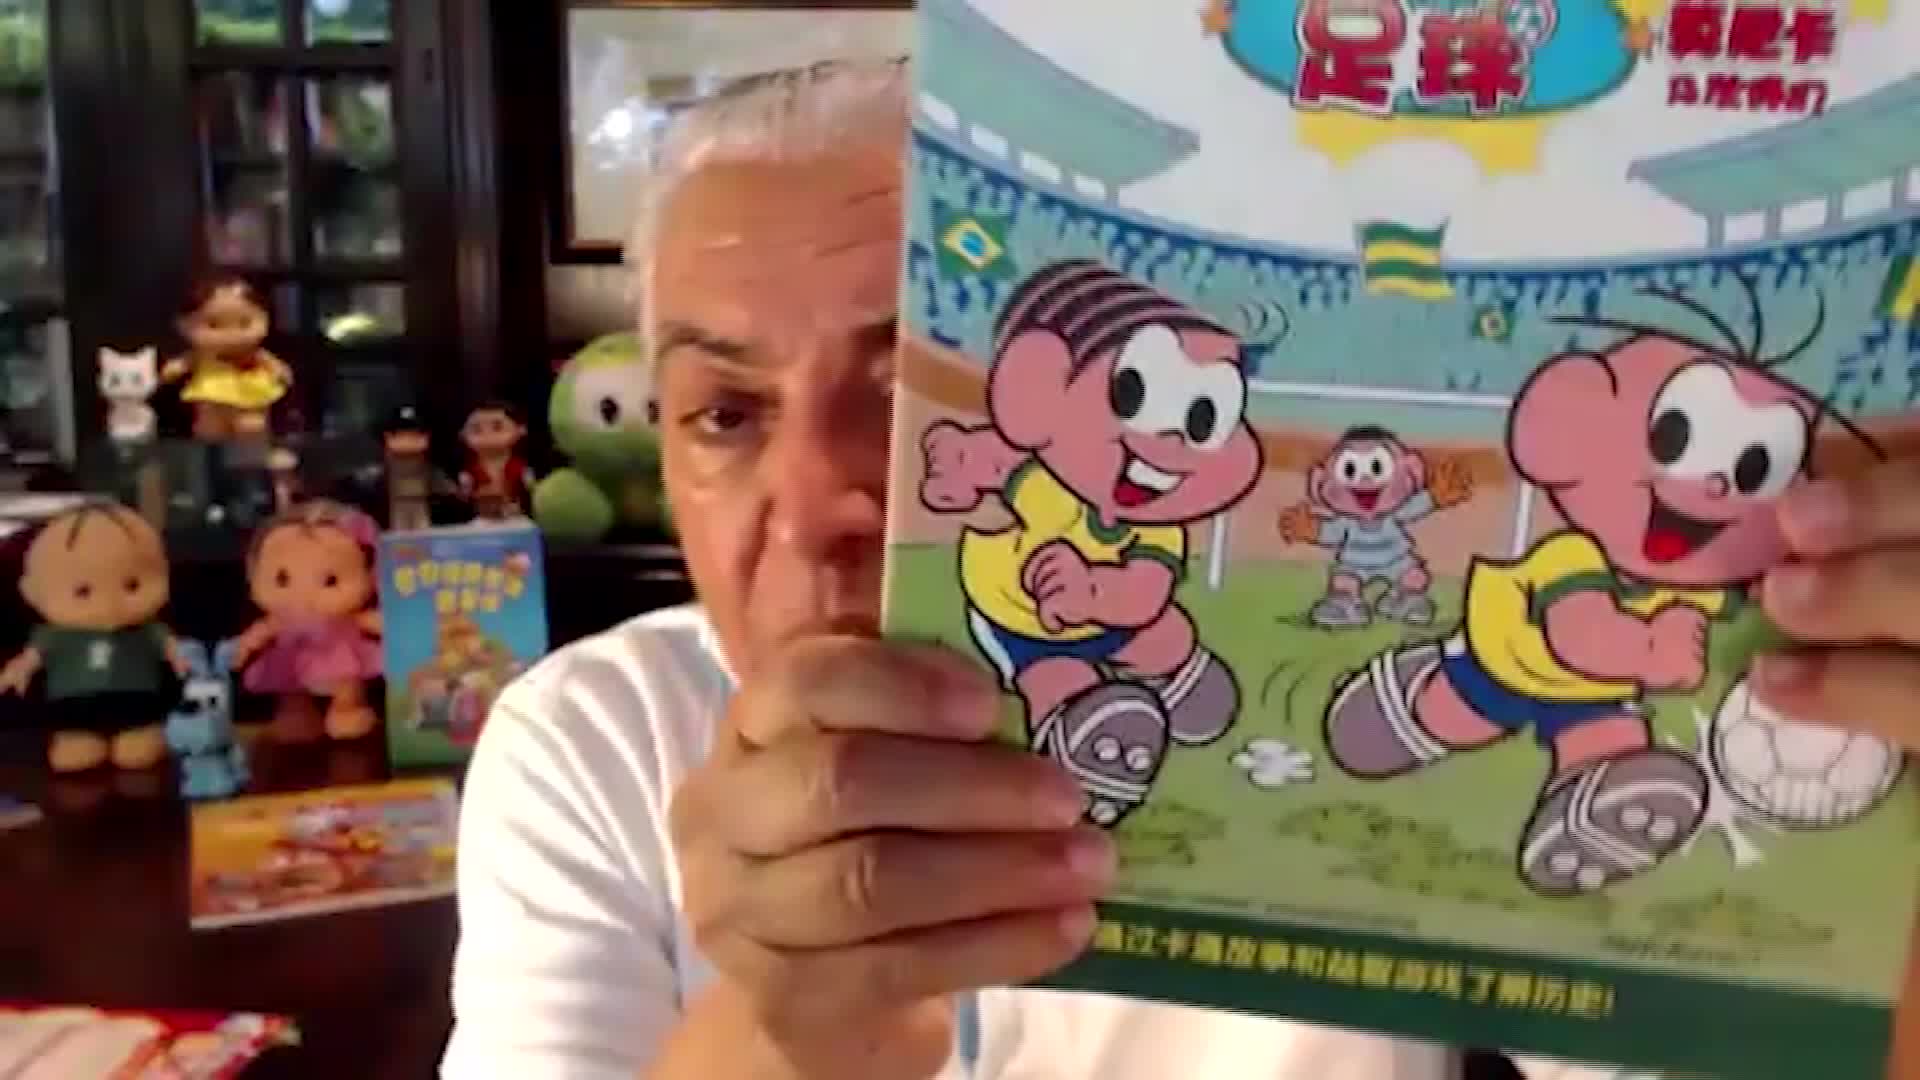 Publicar "La Pandilla de Mónica" en China sería un sueño para el caricaturista brasileño Mauricio de Sousa